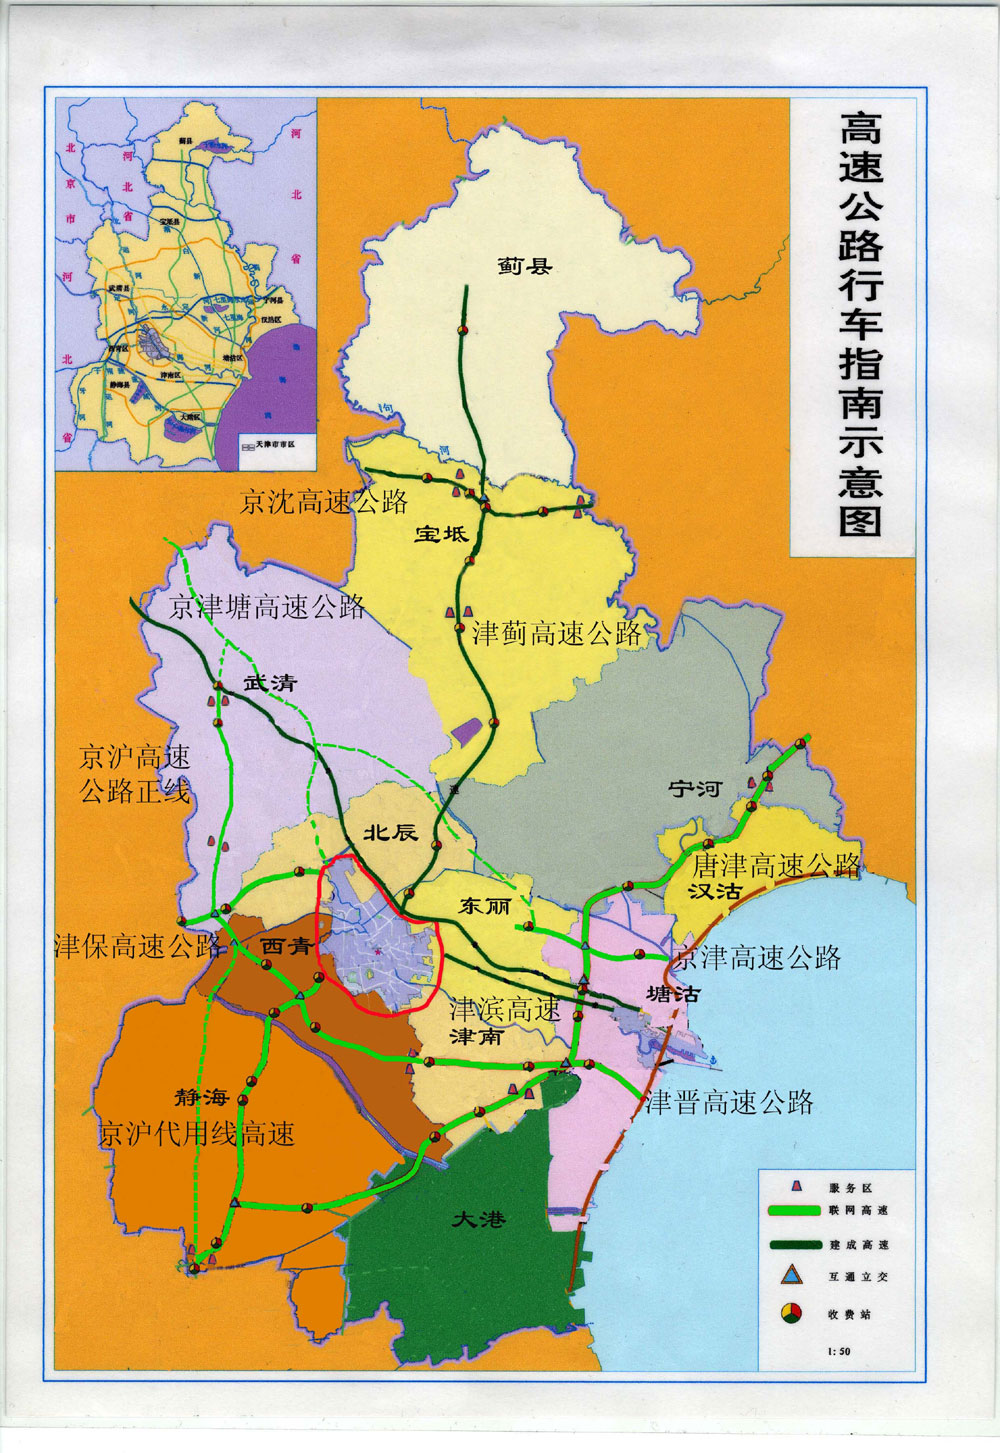 天津市已经通车的高速公路情况(附图)